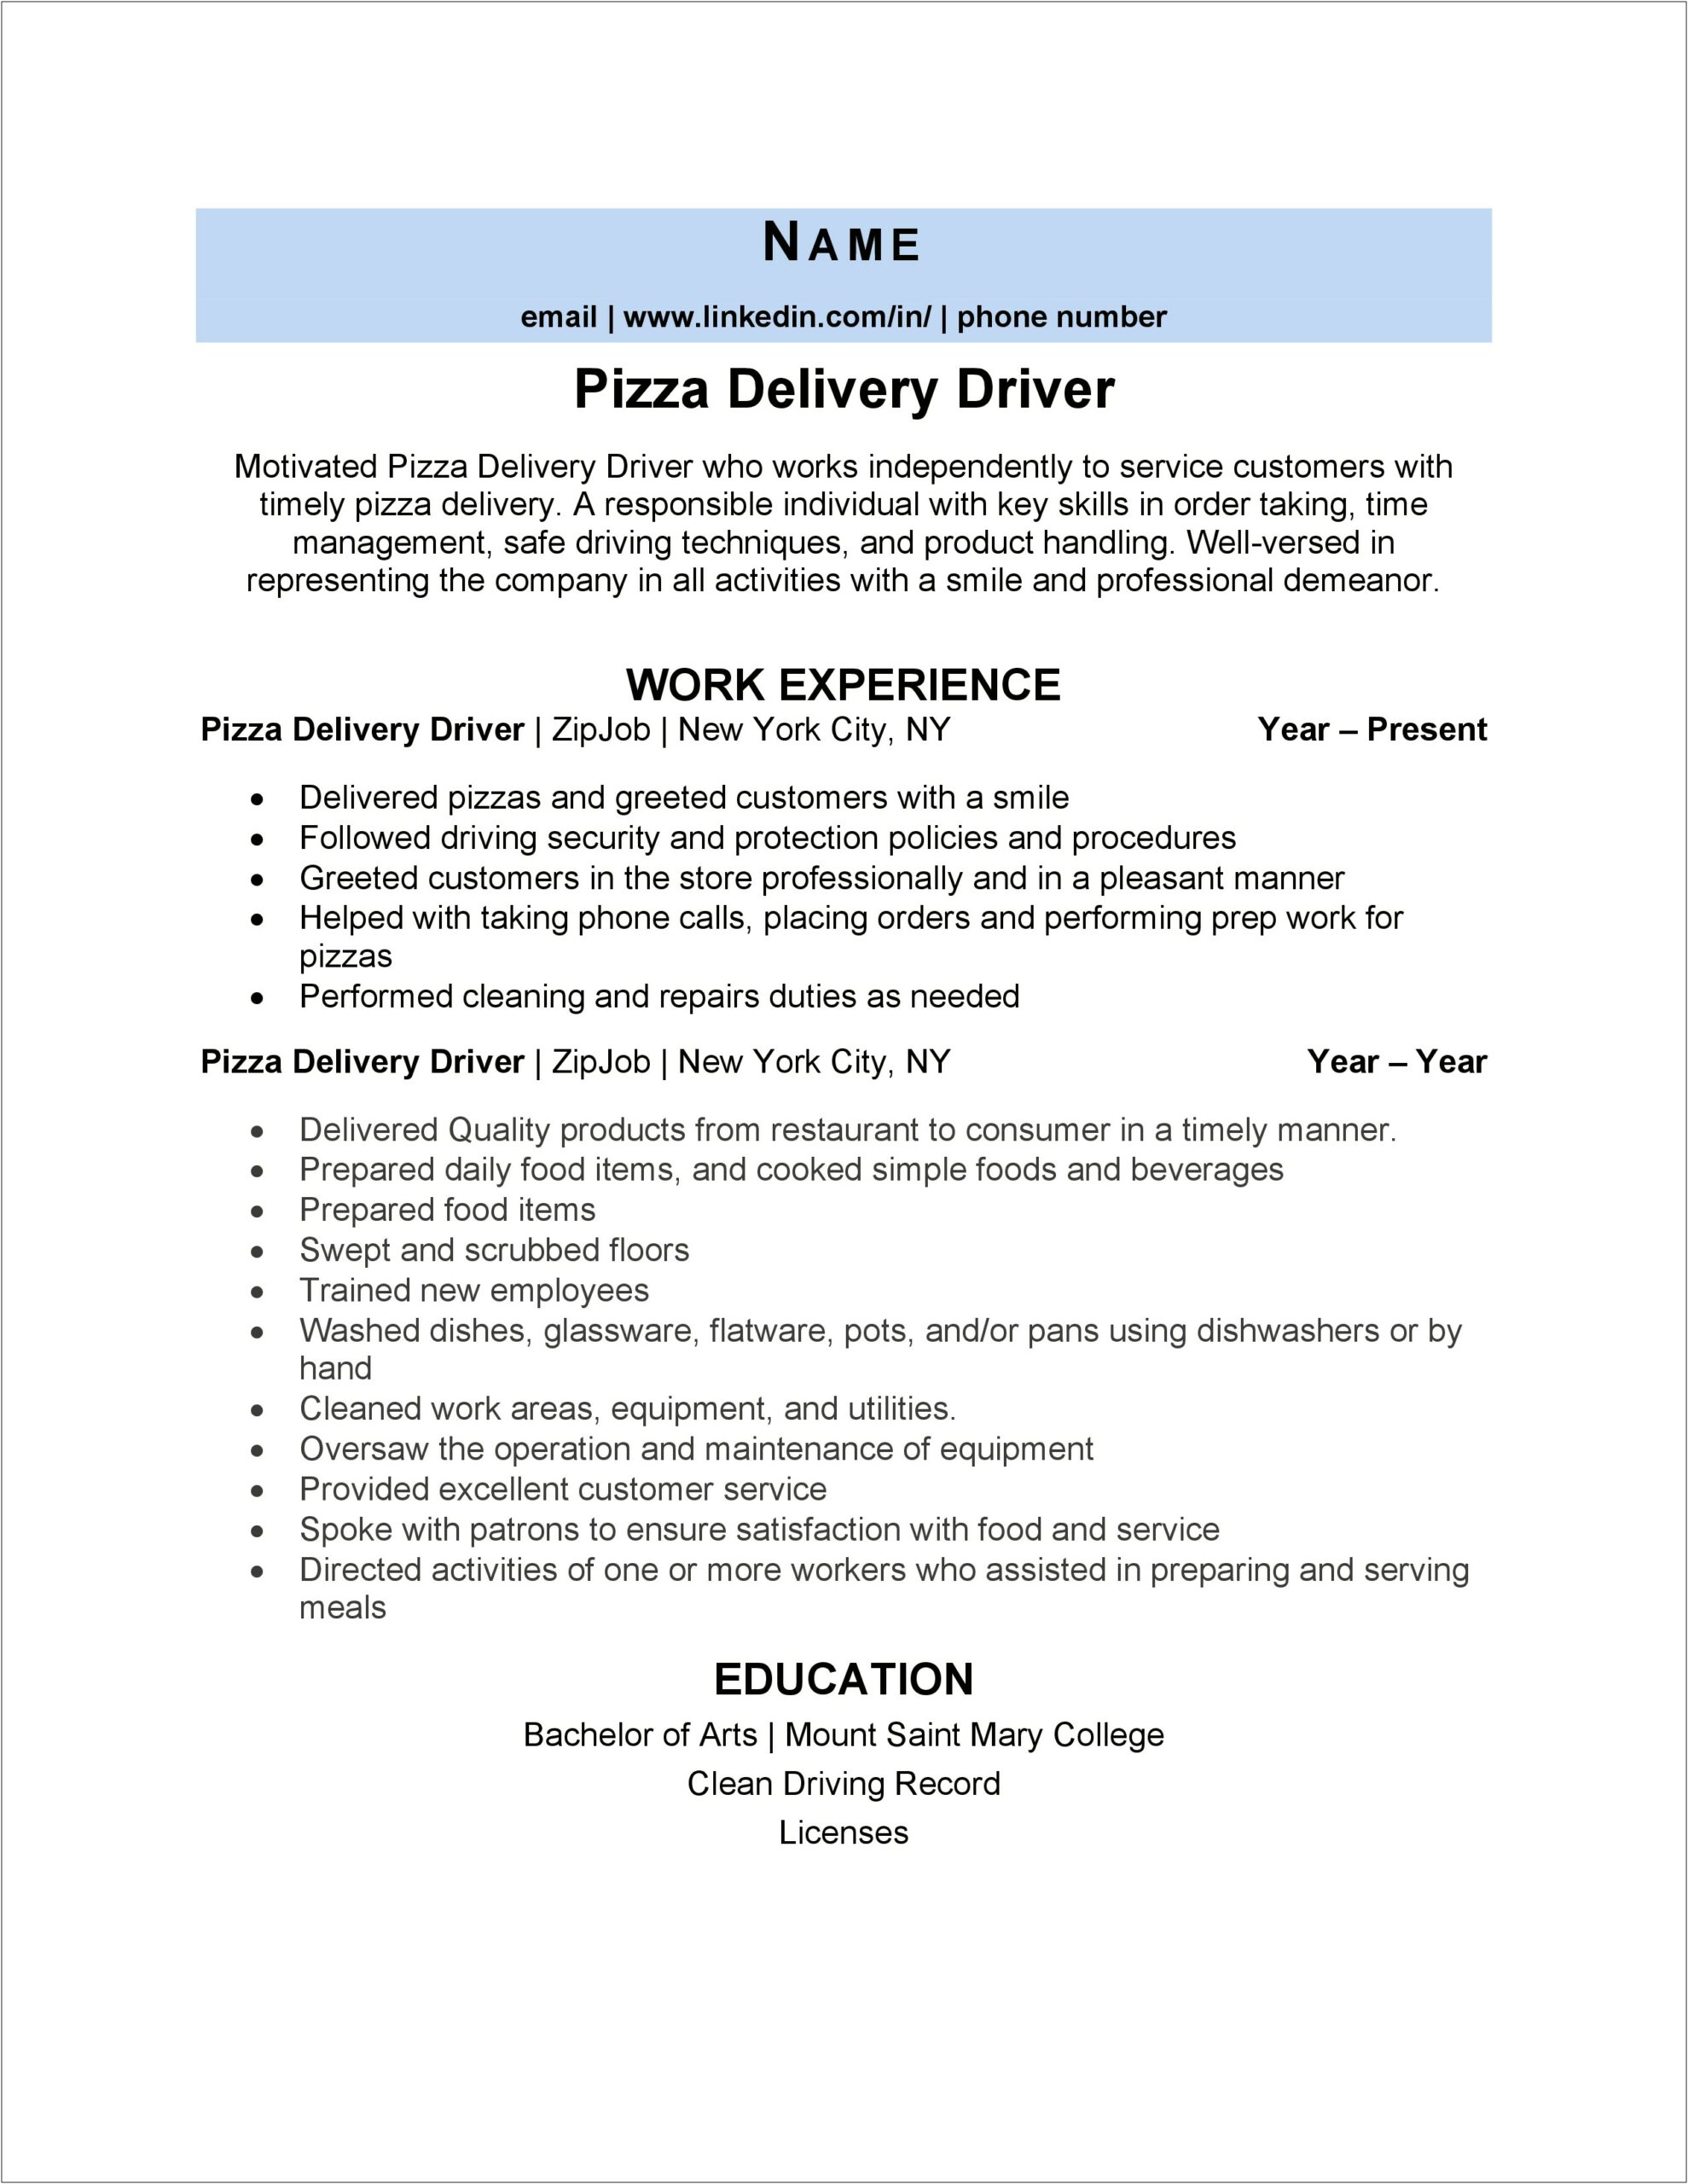 Delivery Driver Pizza Job Description Resume